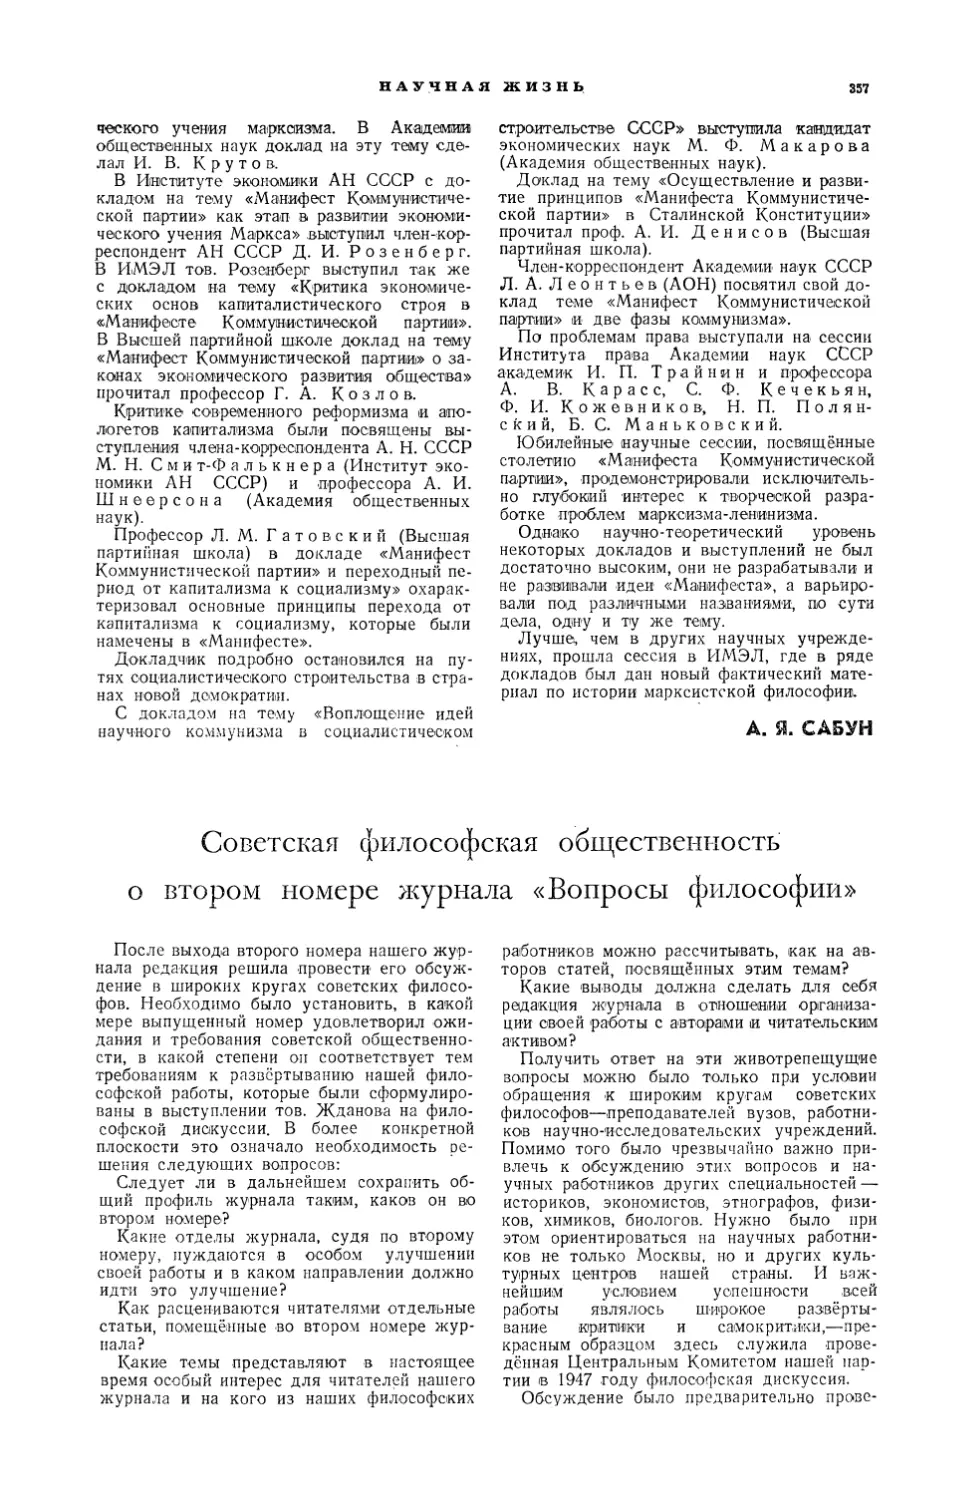 Советская философская общественность о втором номере журнала «Вопросы философии»